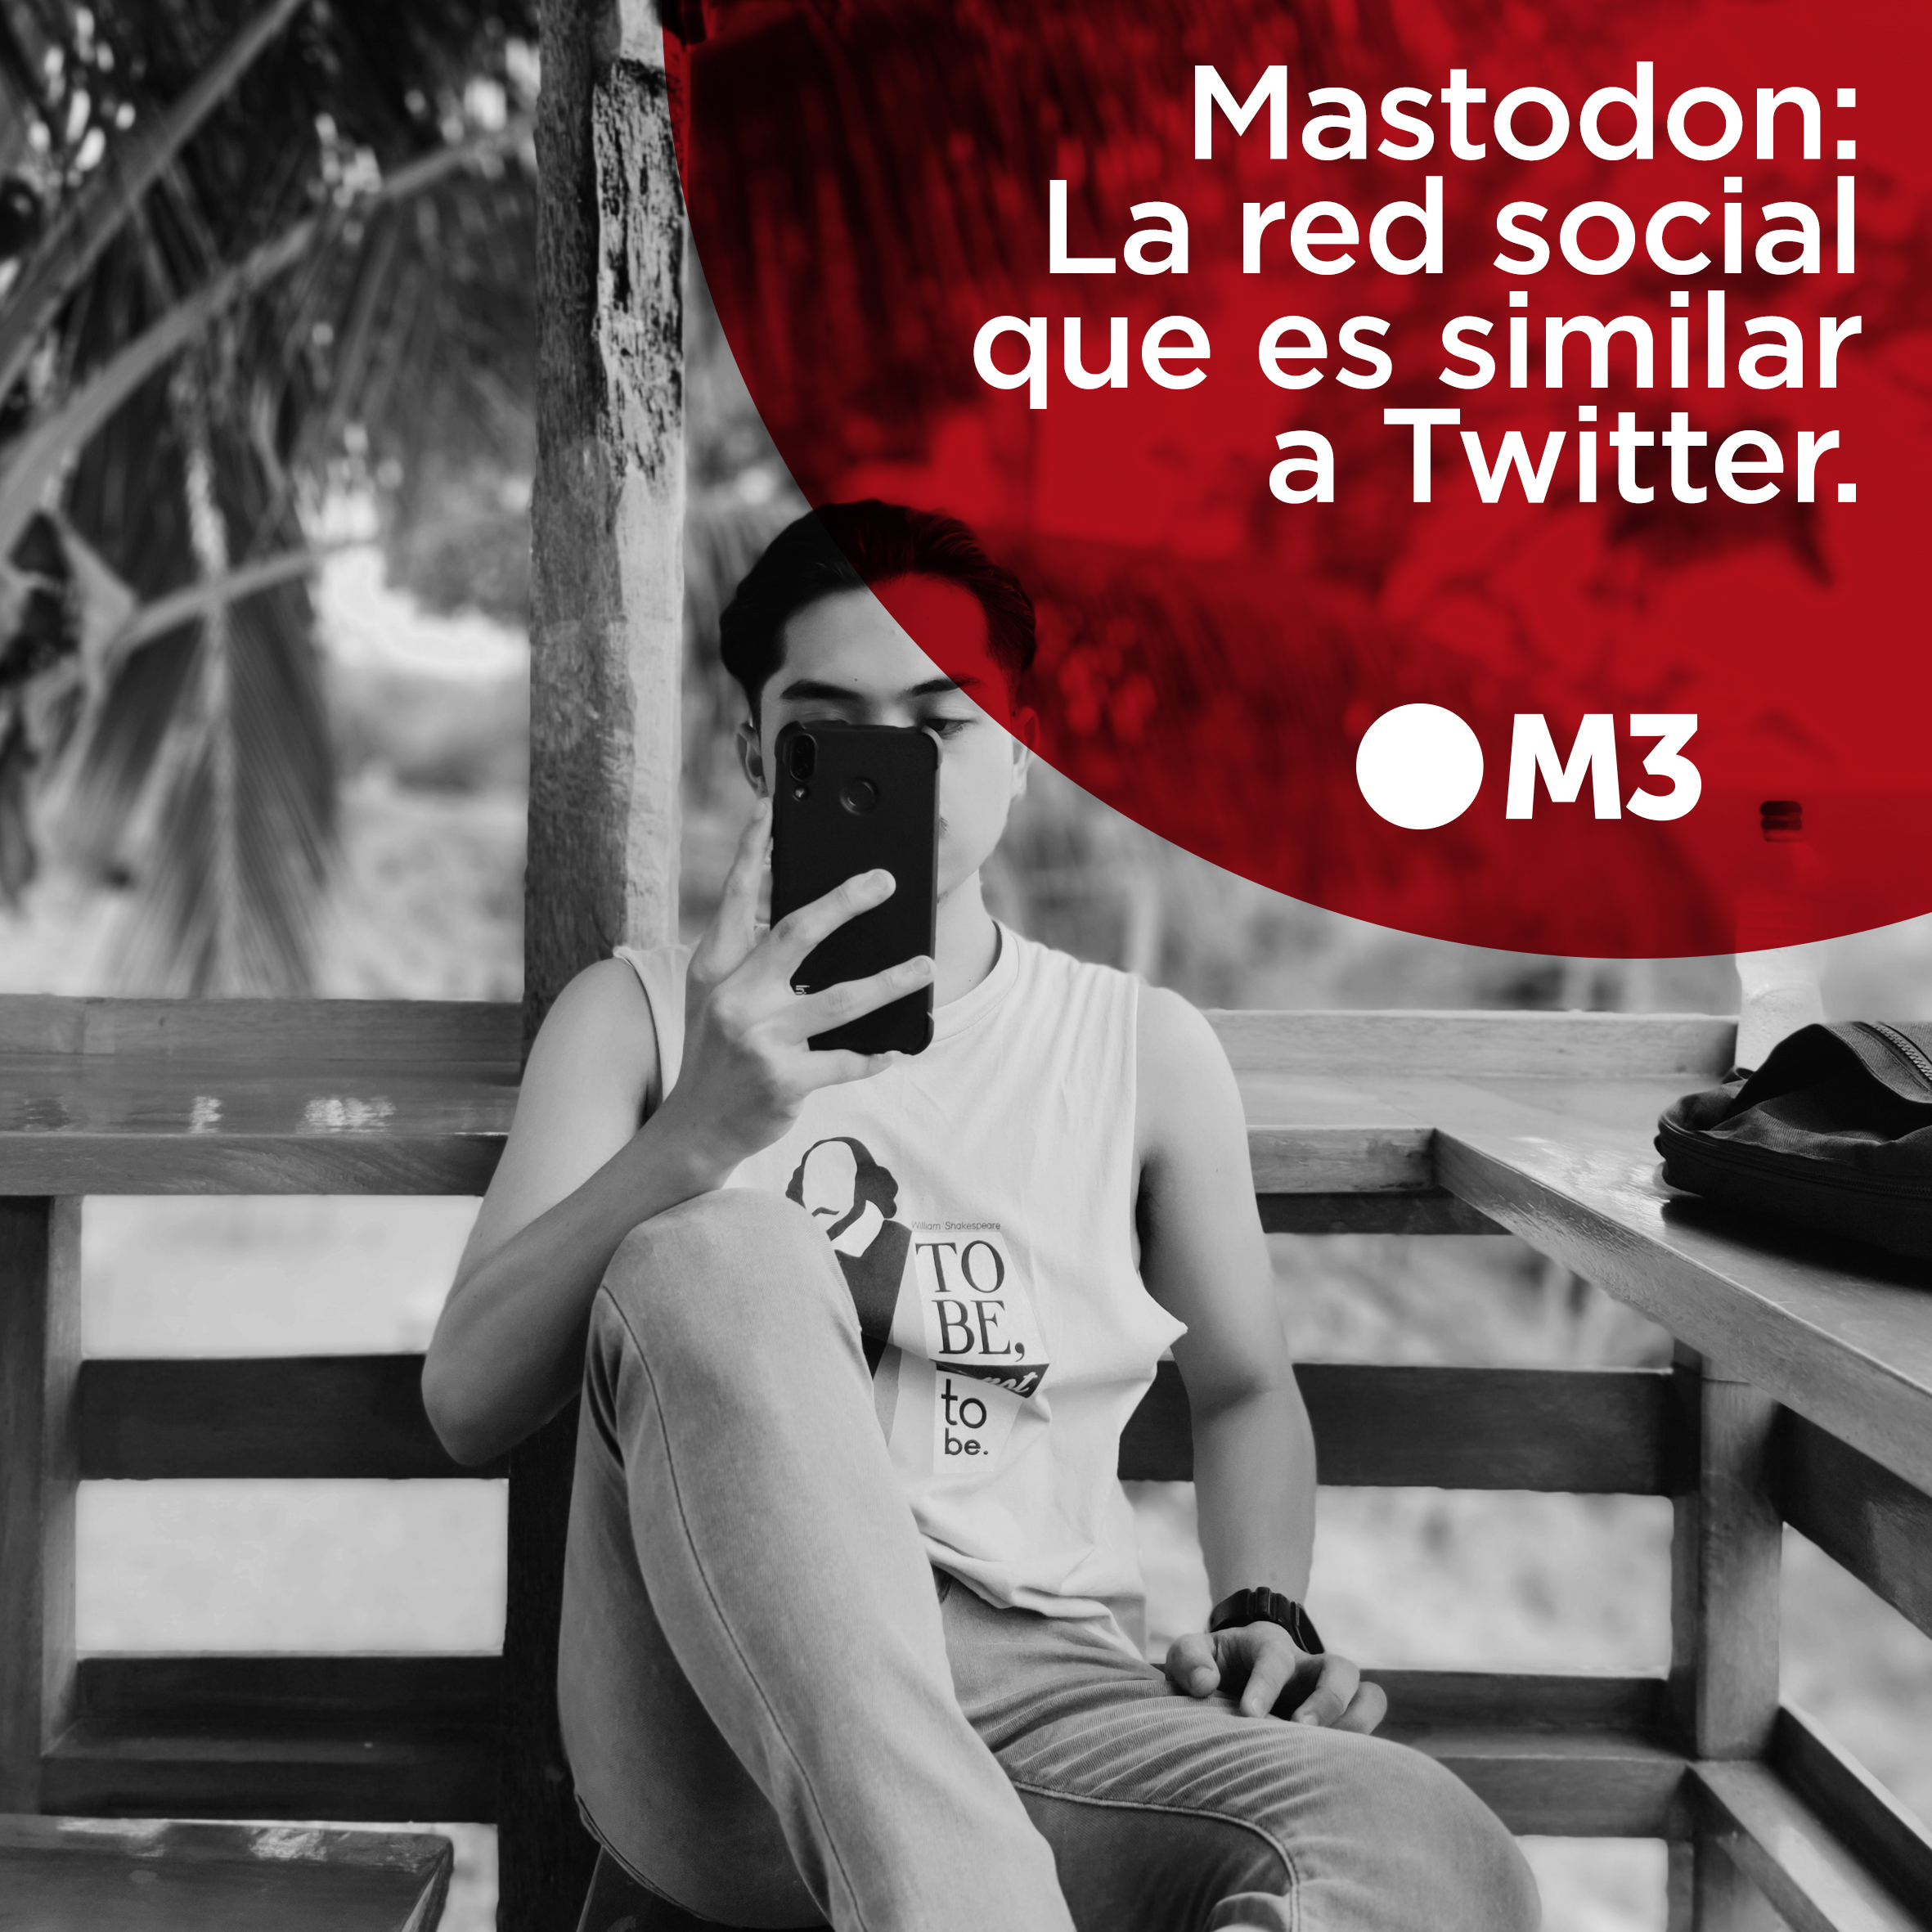 Mastodon: La red social similar a Twitter